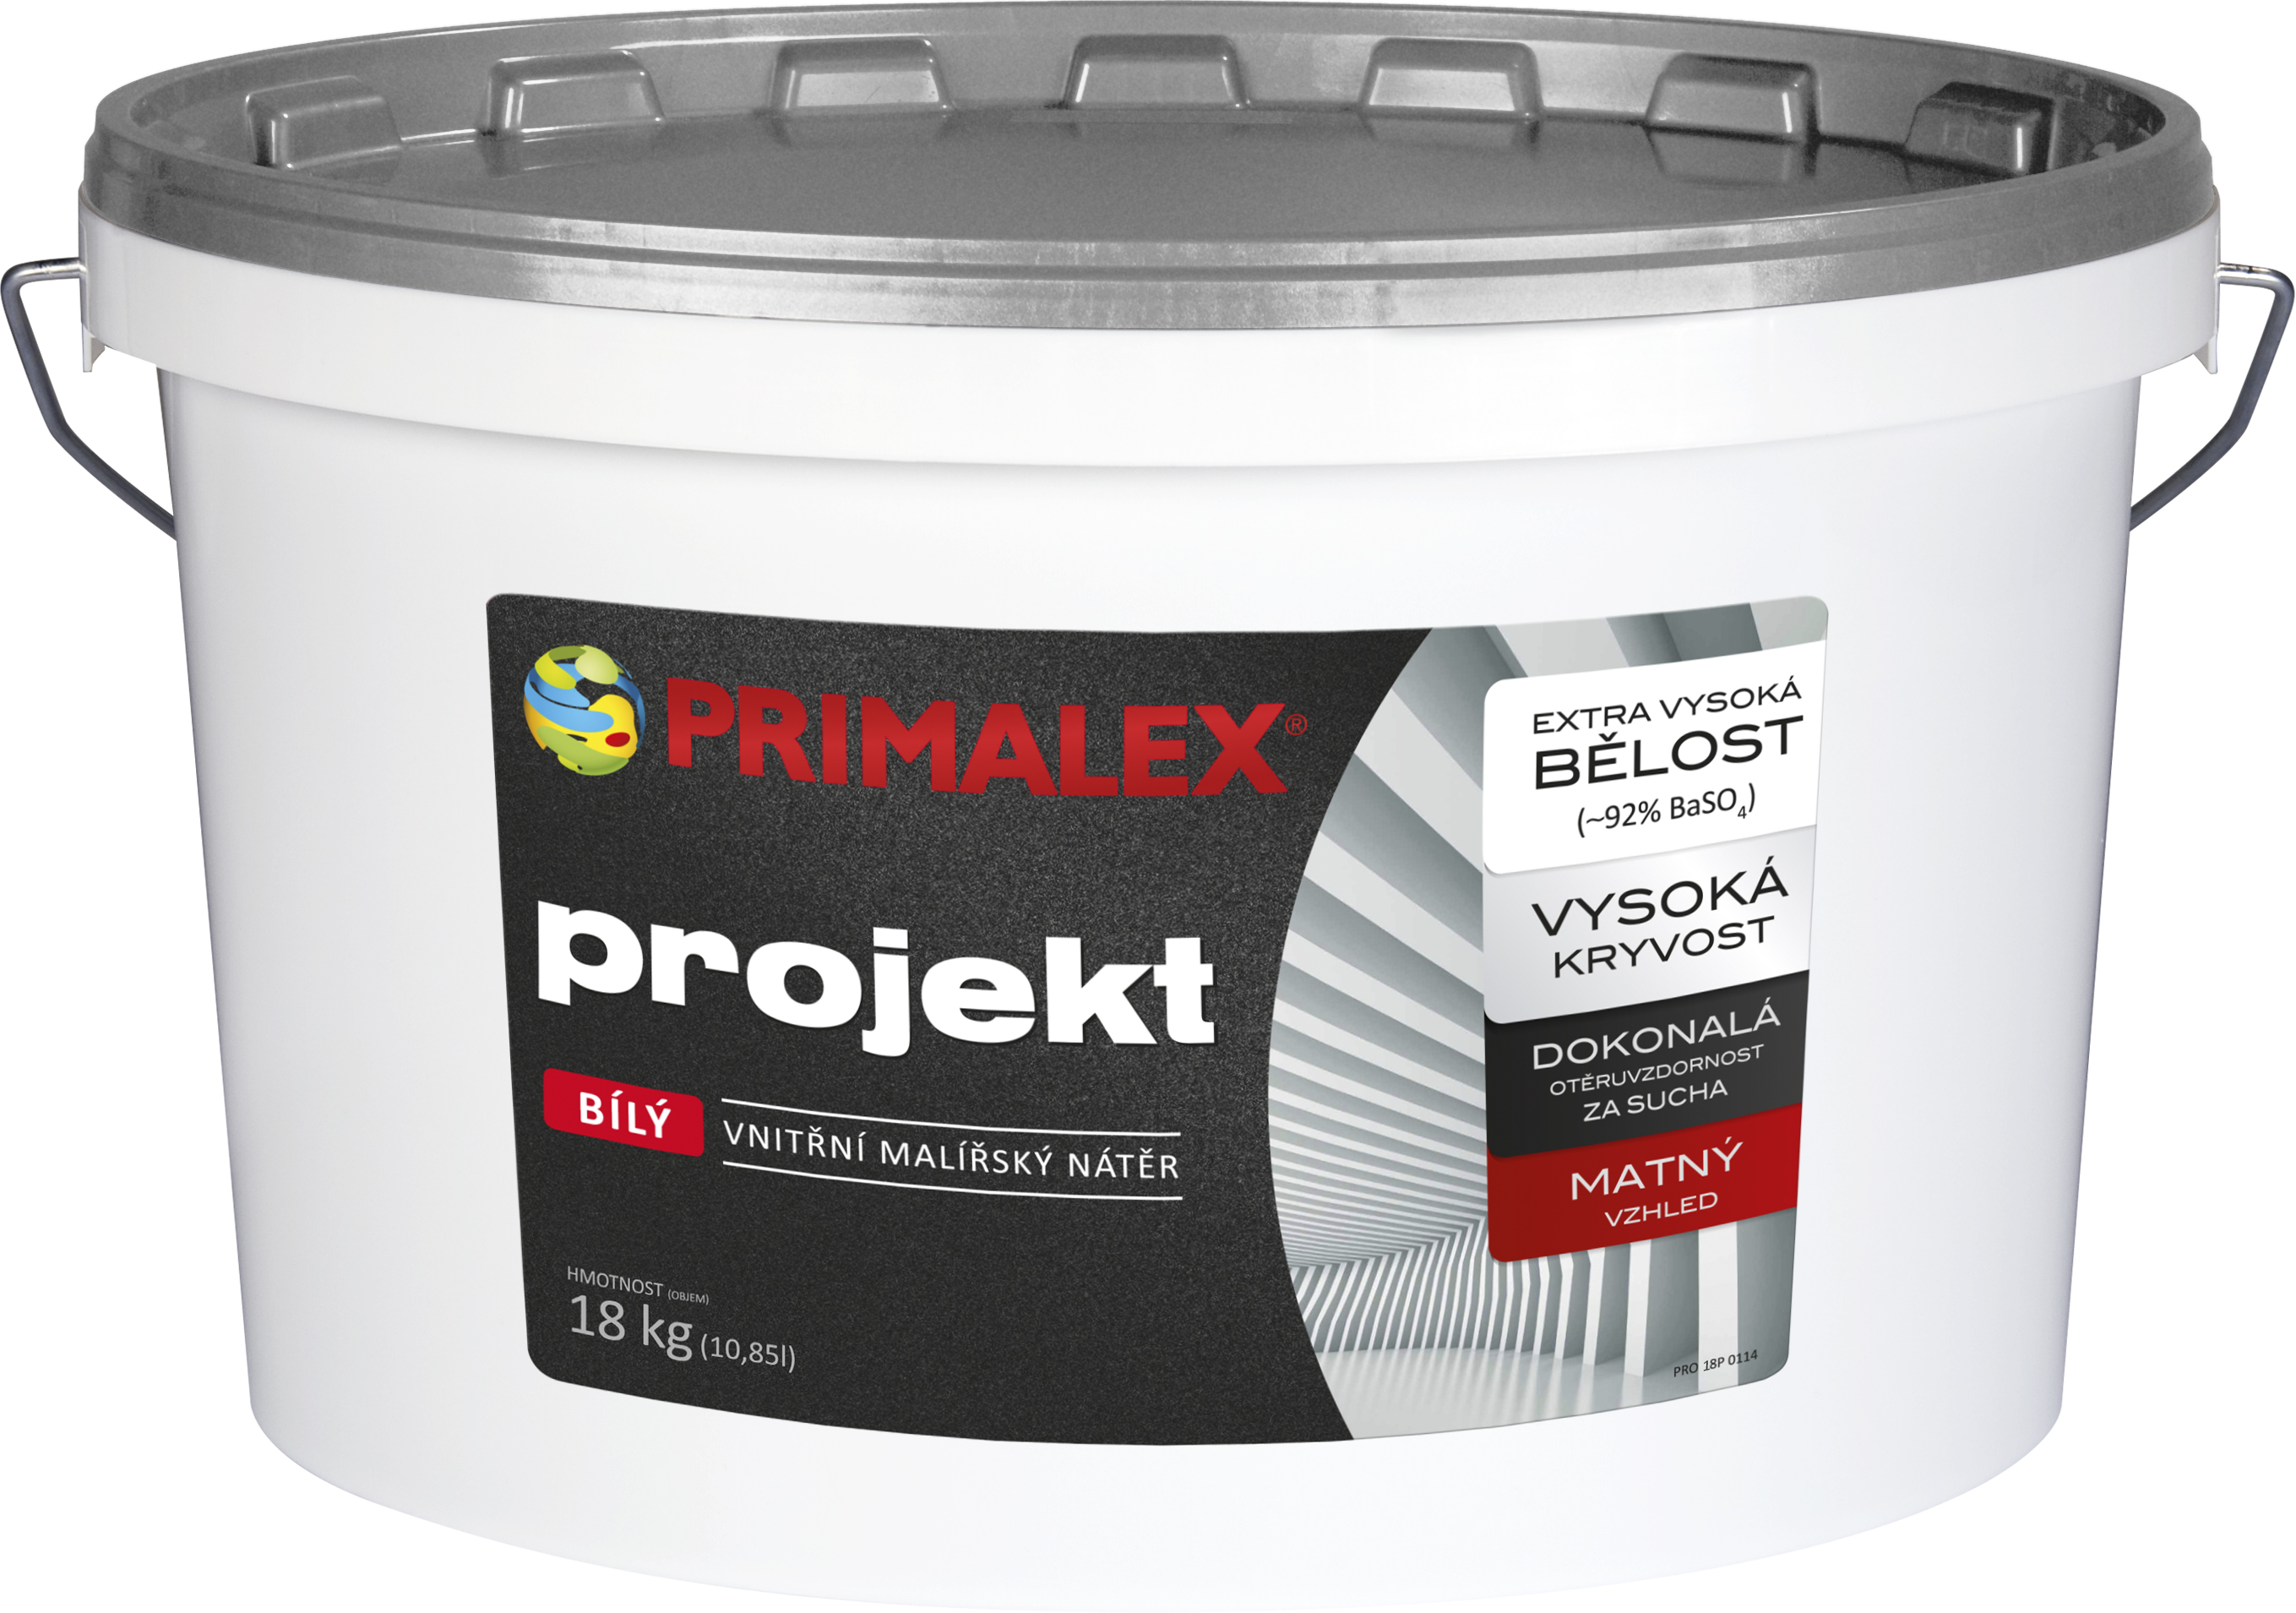 Primalex Projekt 18 + 3kg